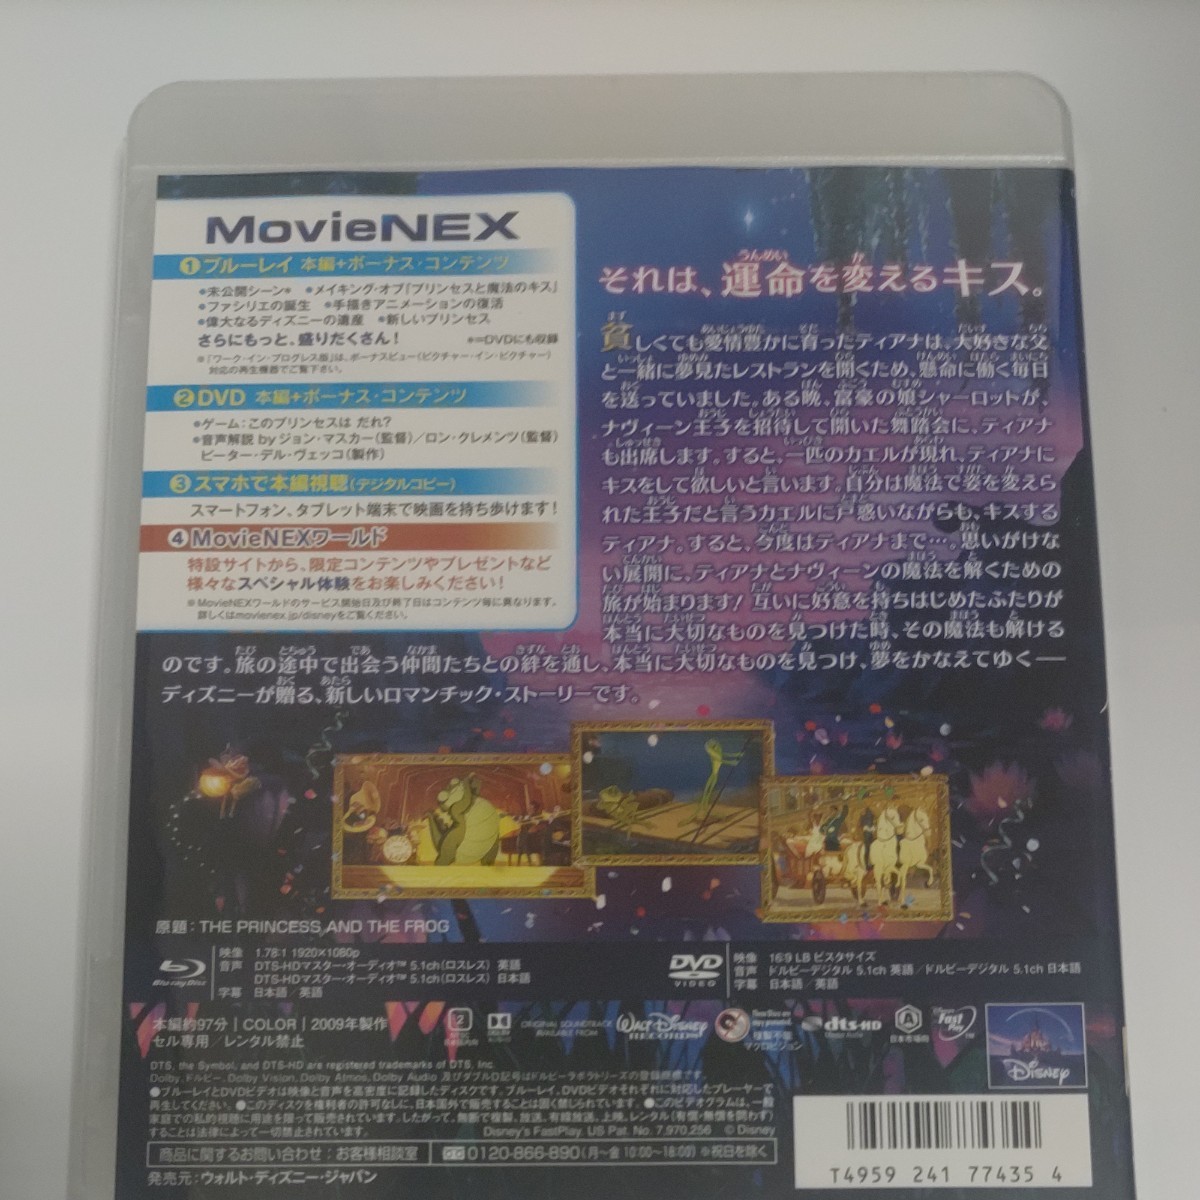  プリンセスと魔法のキス MovieNEX [ブルーレイ+DVD+デジタルコピー+MovieNEXワールド ディズニー